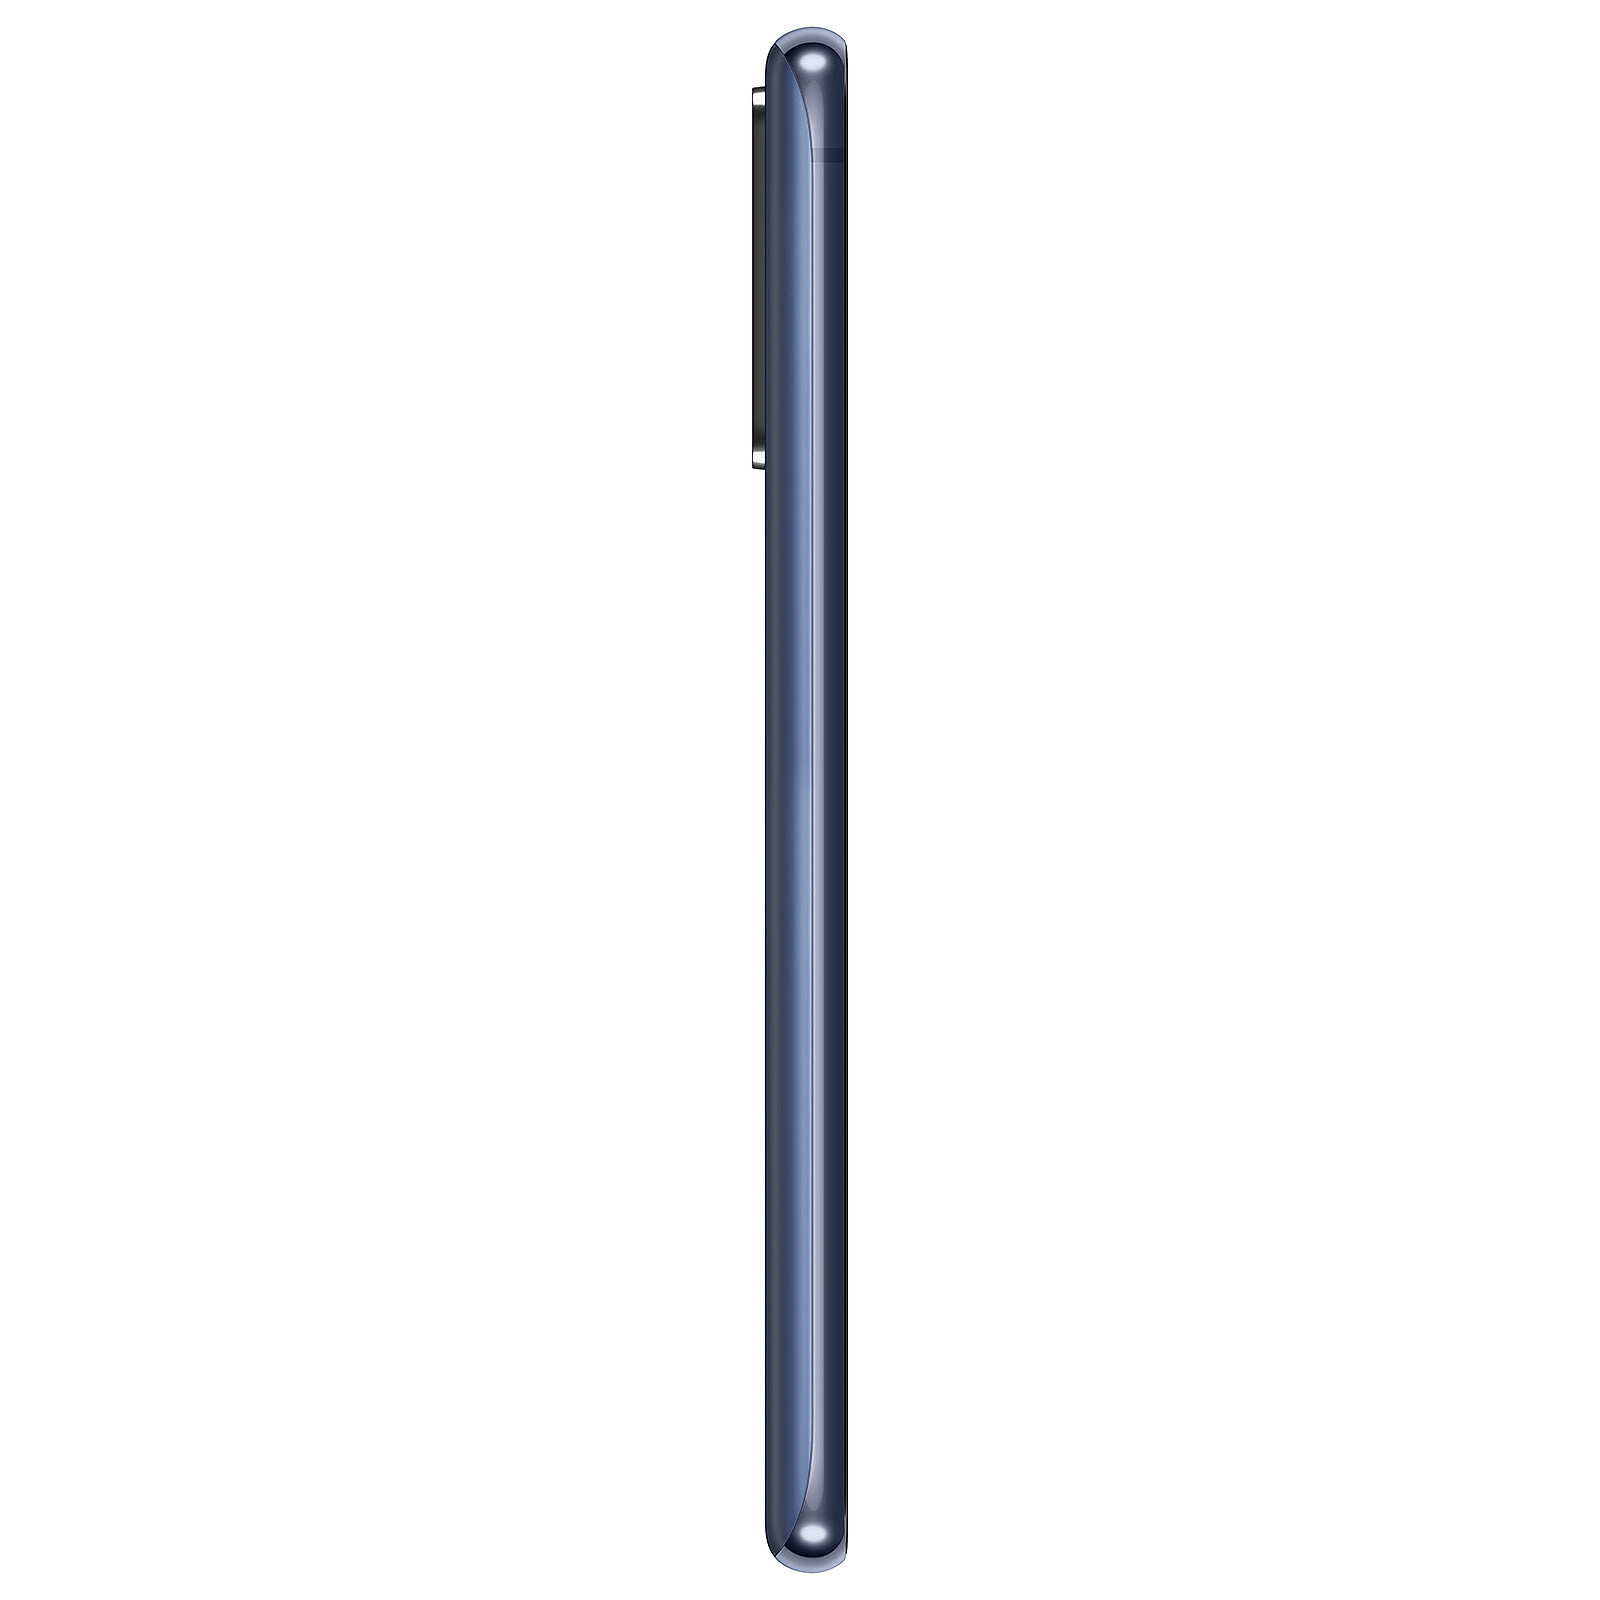 Samsung Galaxy S20 FE 5G Dual Sim Bleu 128Go Reconditionné